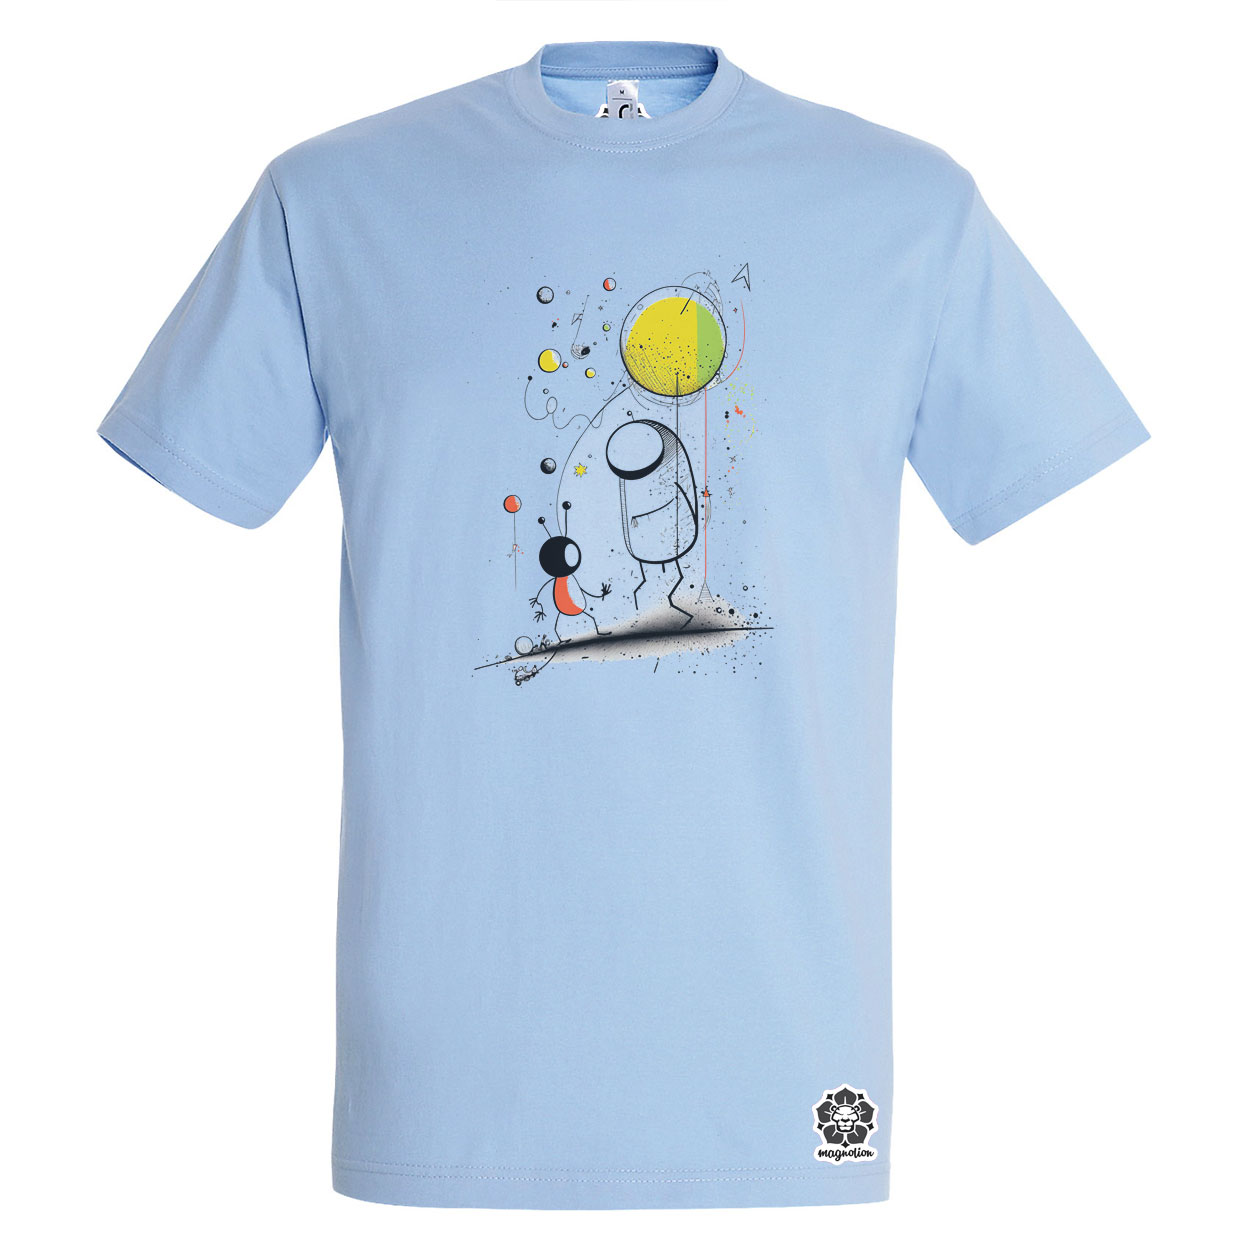 Joan Miró űr és asztronauta v1